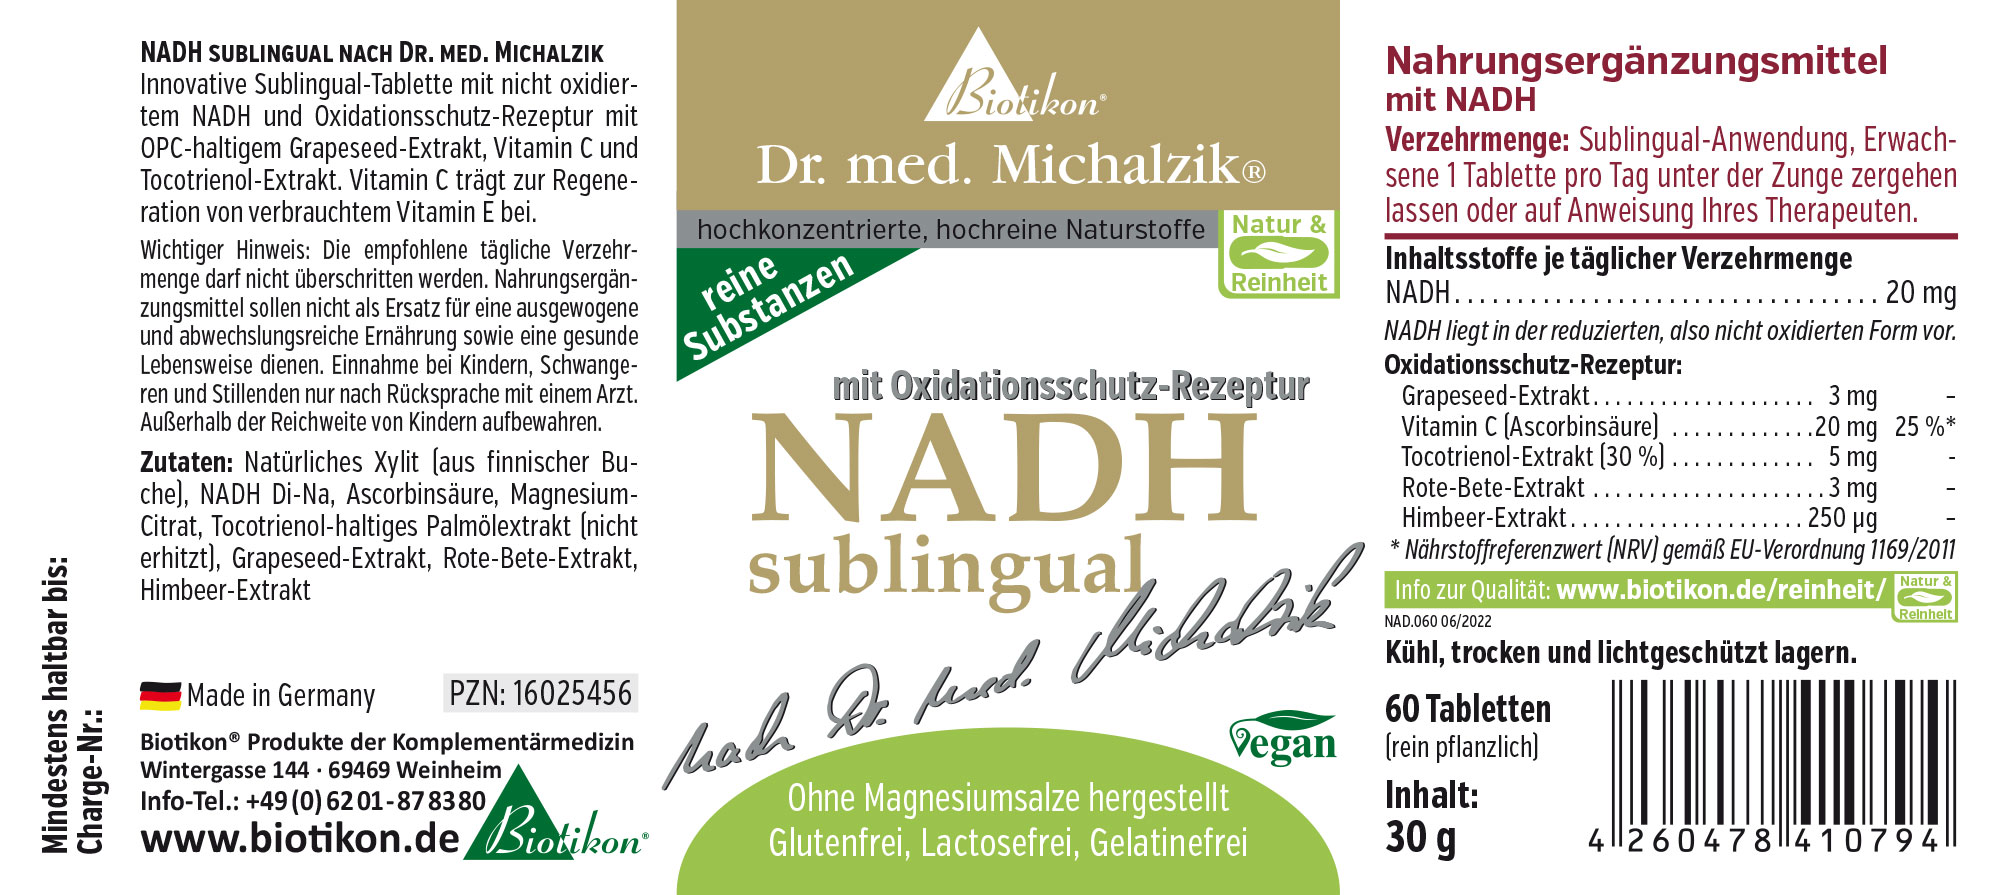 NADH en cachets sublingaux